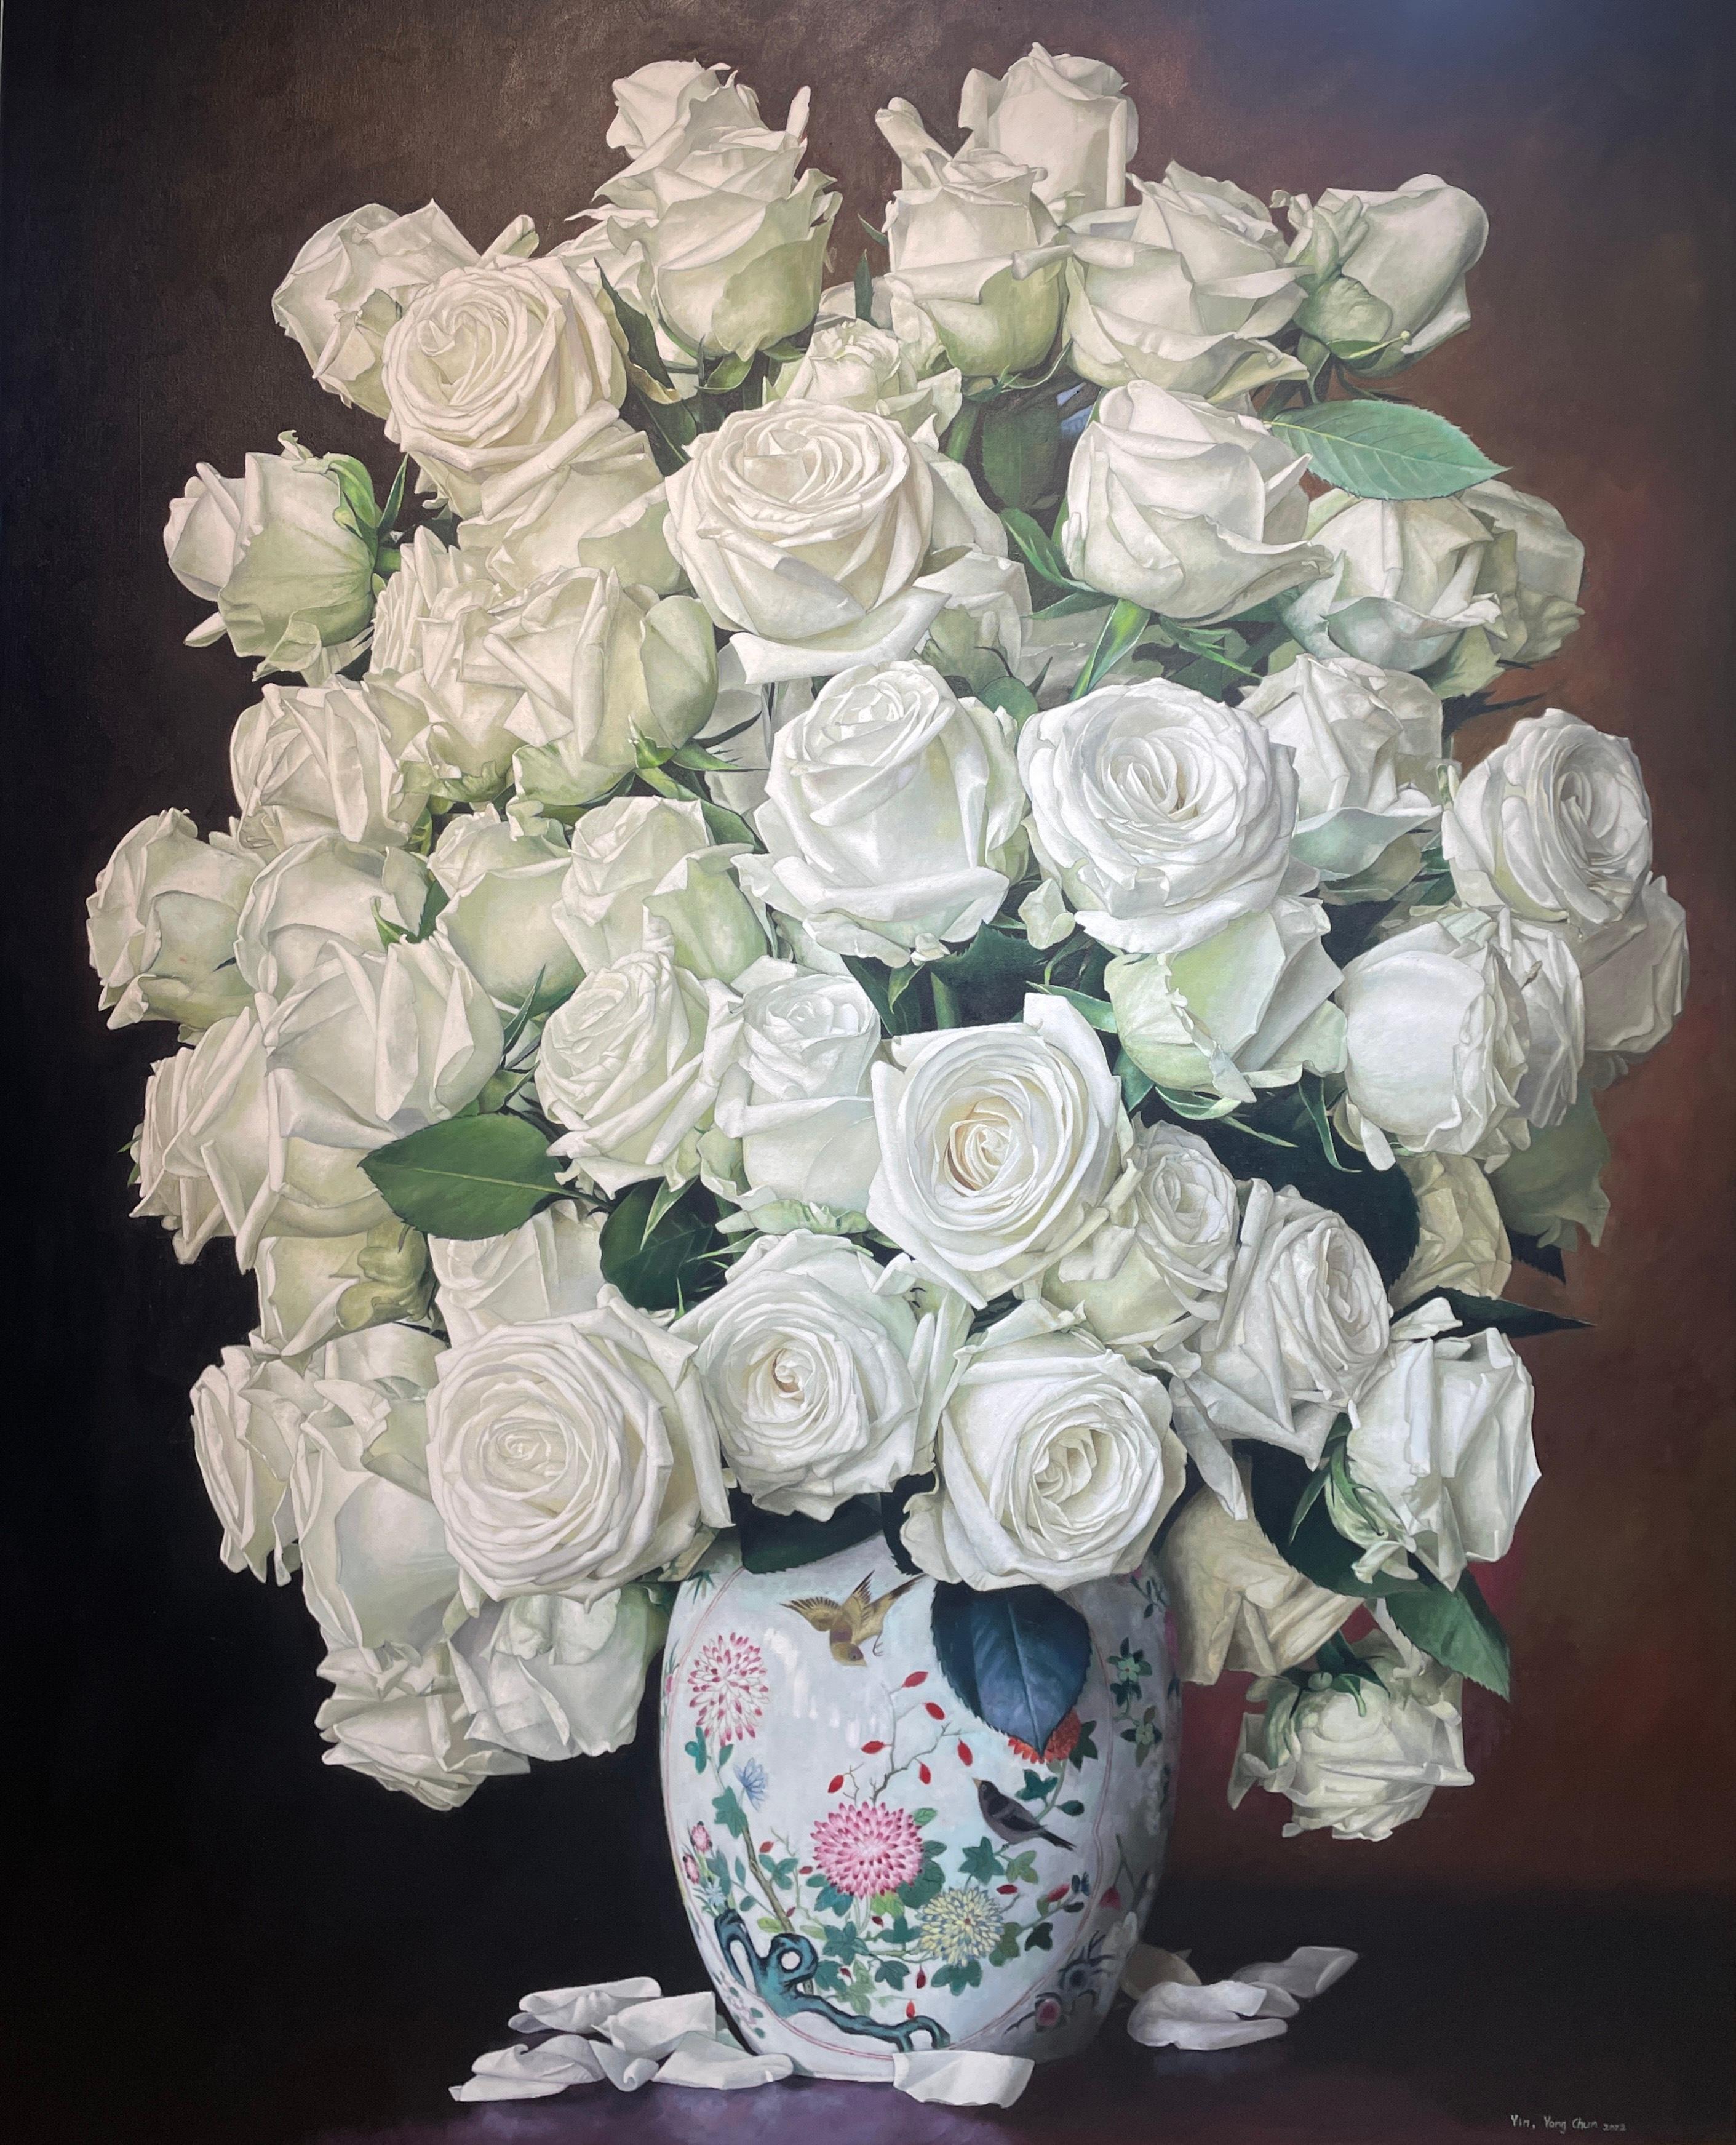 Das Blumenstillleben "Weiße Rosen mit Porzellantopf" des Künstlers Yin Yong Chun ist ein 60x48 großes Ölgemälde auf Leinwand, das einen Strauß weißer Rosen in einer verzierten Porzellanvase mit heruntergefallenen weißen Blütenblättern auf dem Tisch